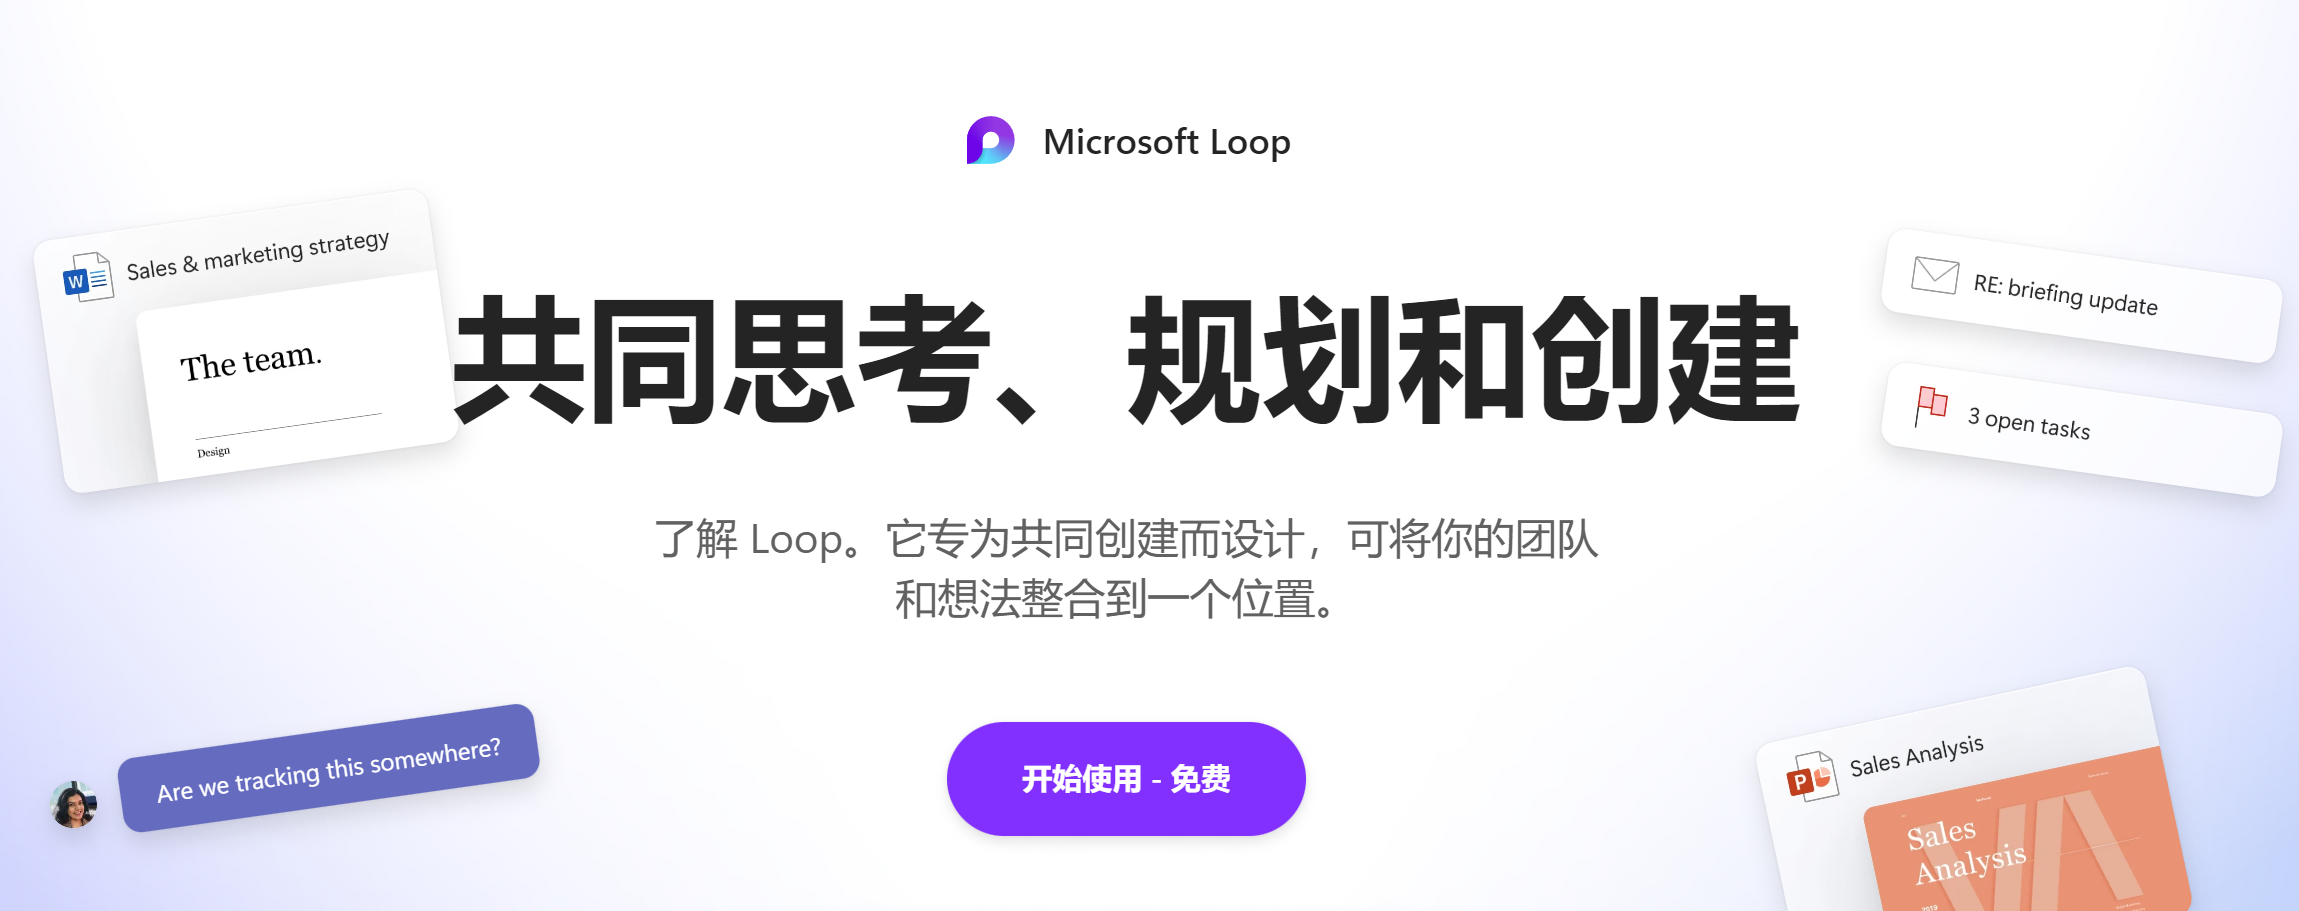 如何体验新的 Microsoft Loop 应用，Notion杀手，loop开启管理员权限配置